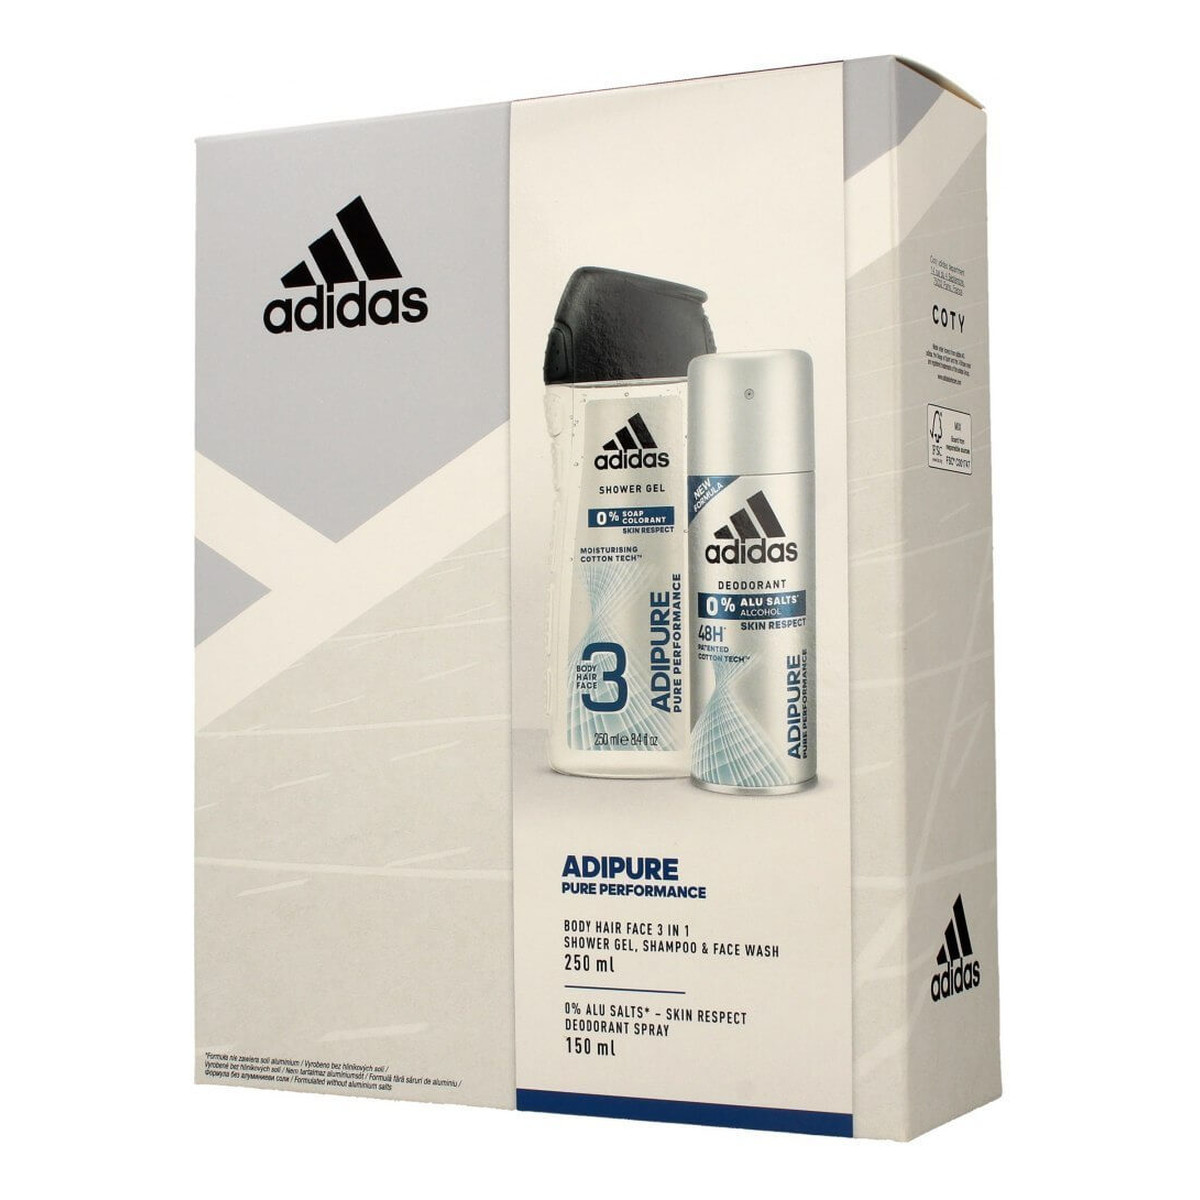 Adidas Adipure Men zestaw prezentowy (dezodorant 150ml+żel pod prysznic 3w1 250ml)